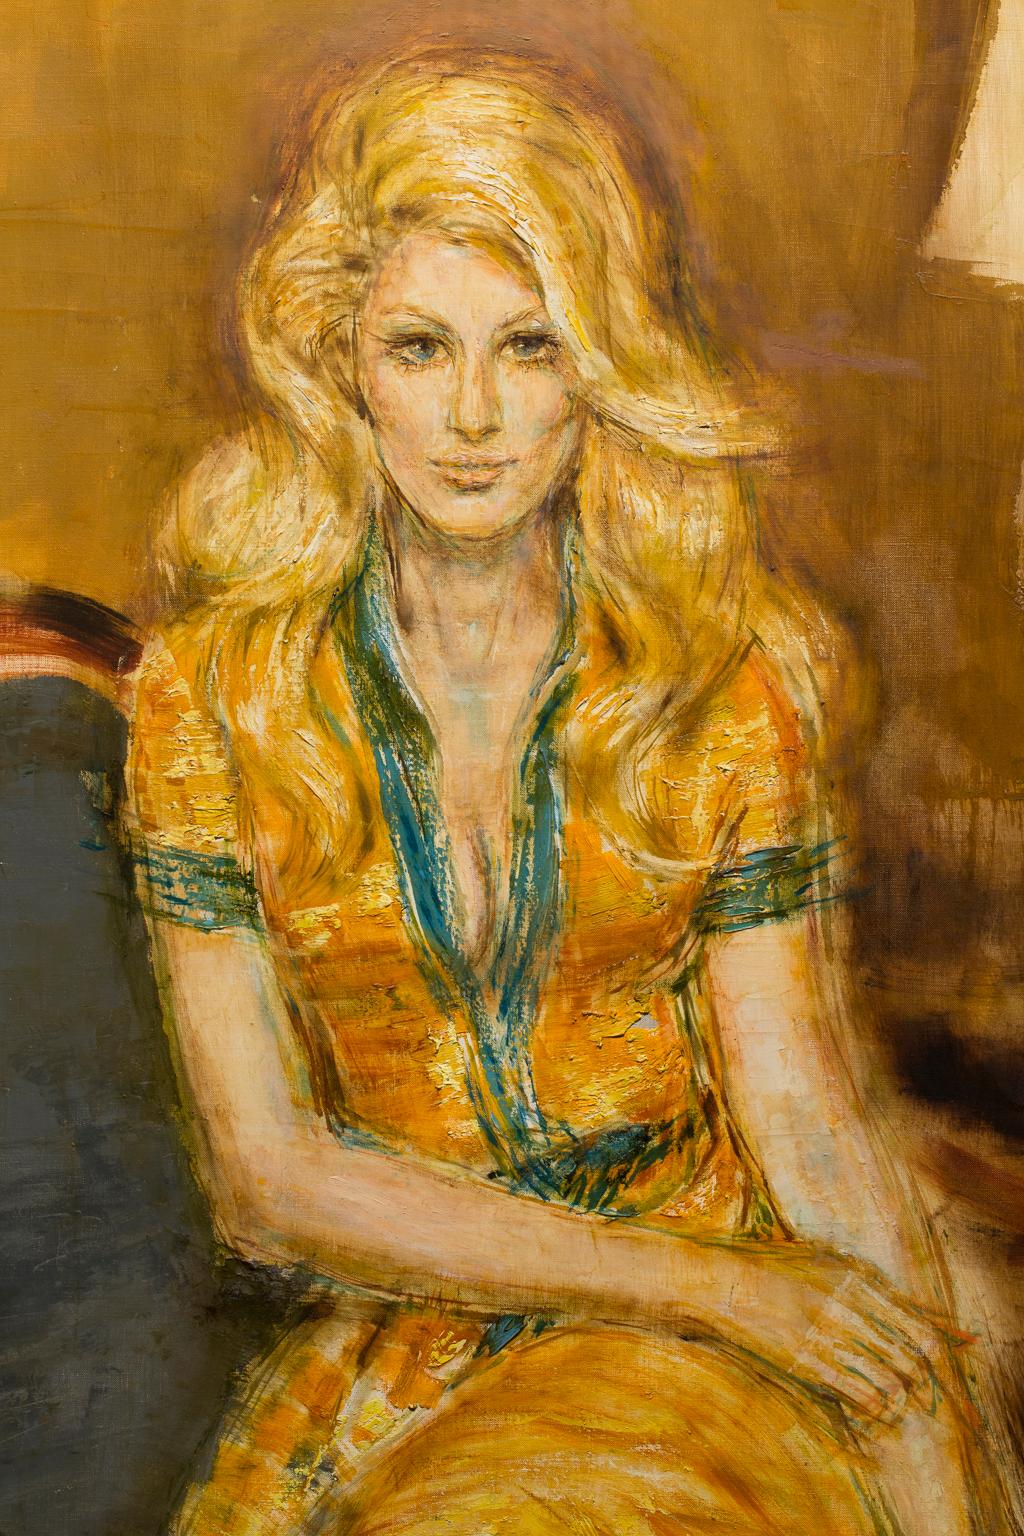 „Baby Jane Holzer“  Frauenporträt, goldene und grüne Farben, Celebrity, intim, weiblich – Painting von Artis Lane